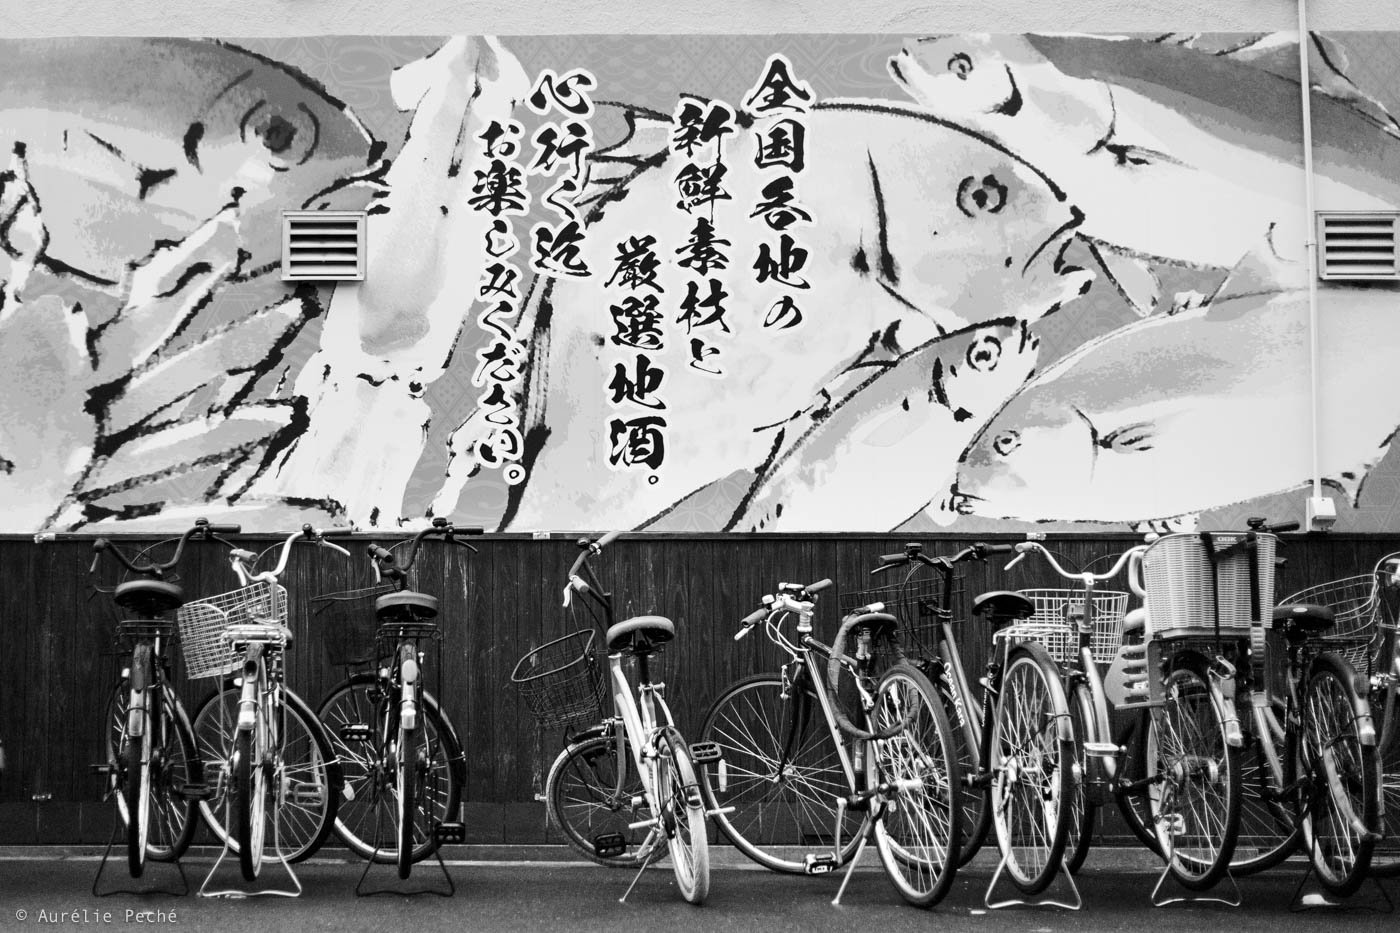 Une série de vélos devant un mur peint avec des poissons stylisés et du texte en japonais